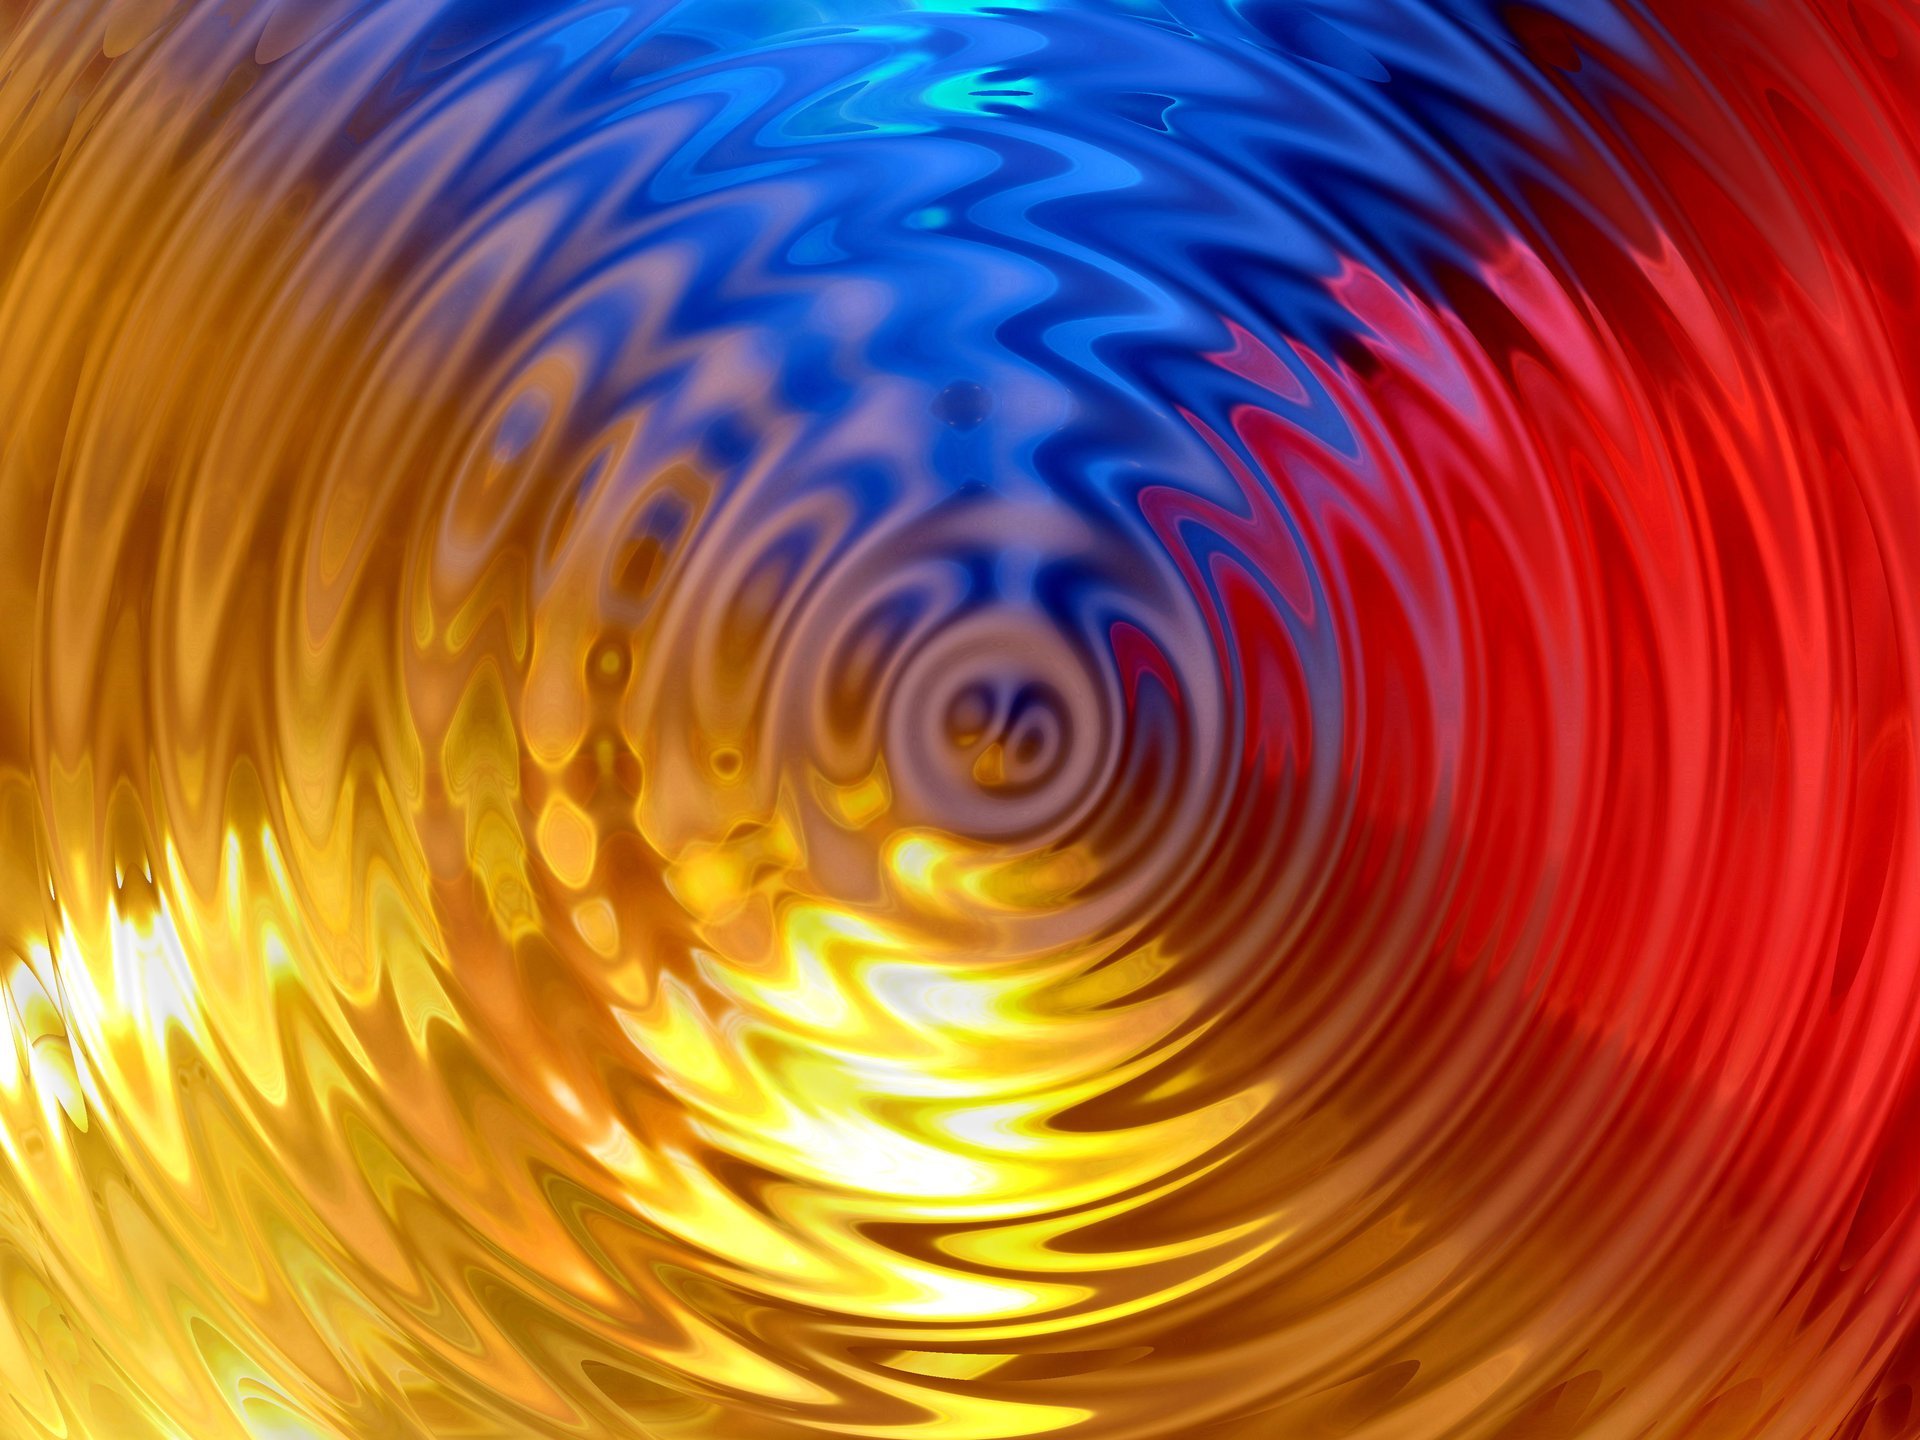 ripple wallpaper,wave,vortex,fractal art,orange,yellow